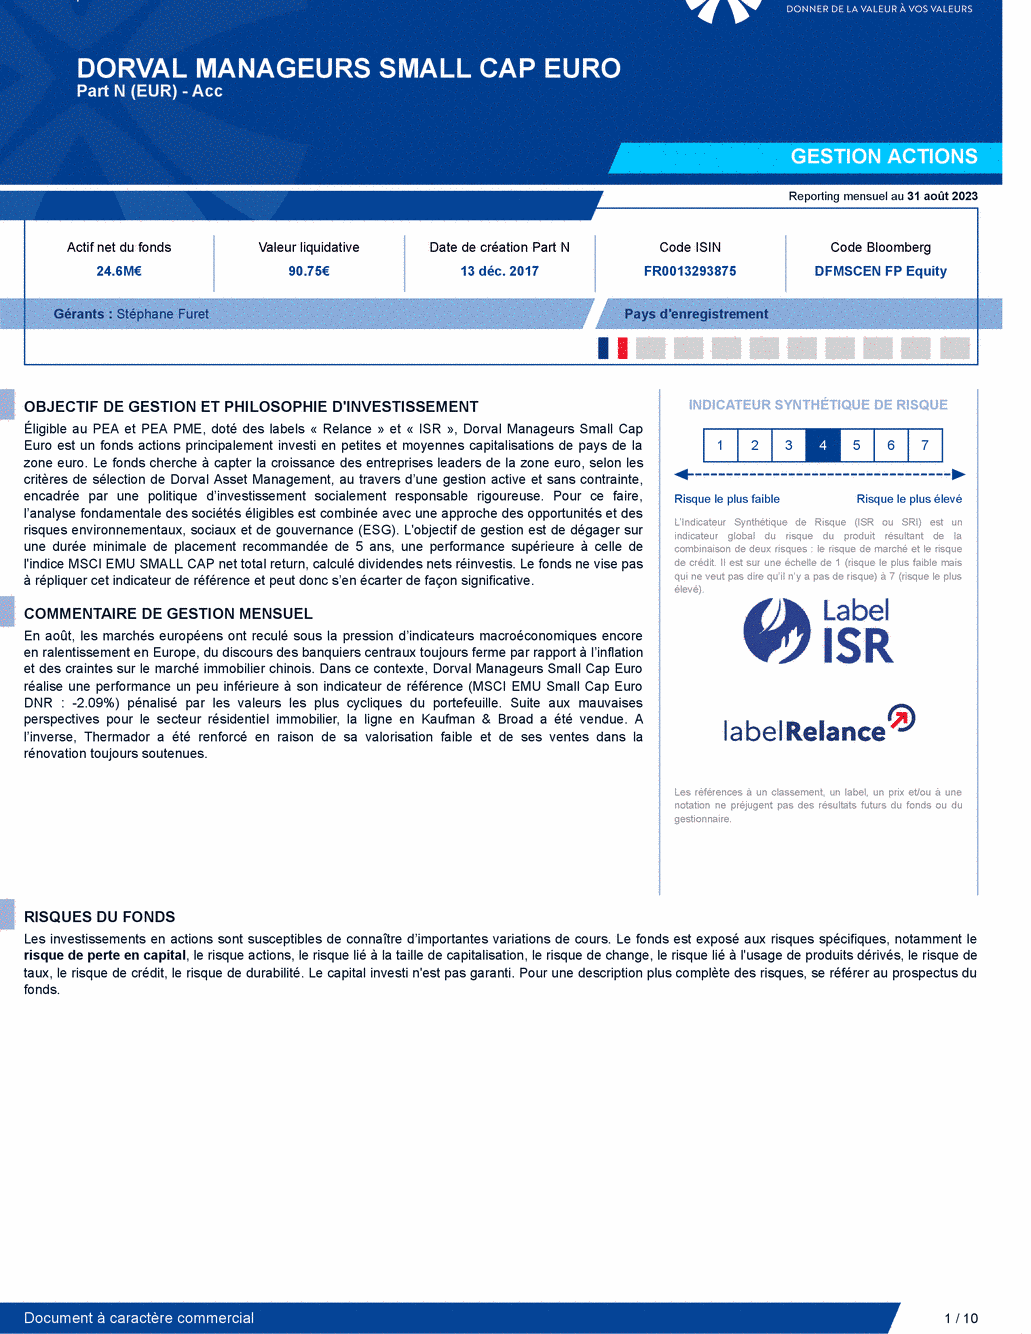 Reporting DORVAL MANAGEURS SMALL CAP EURO N - 31/08/2023 - Français